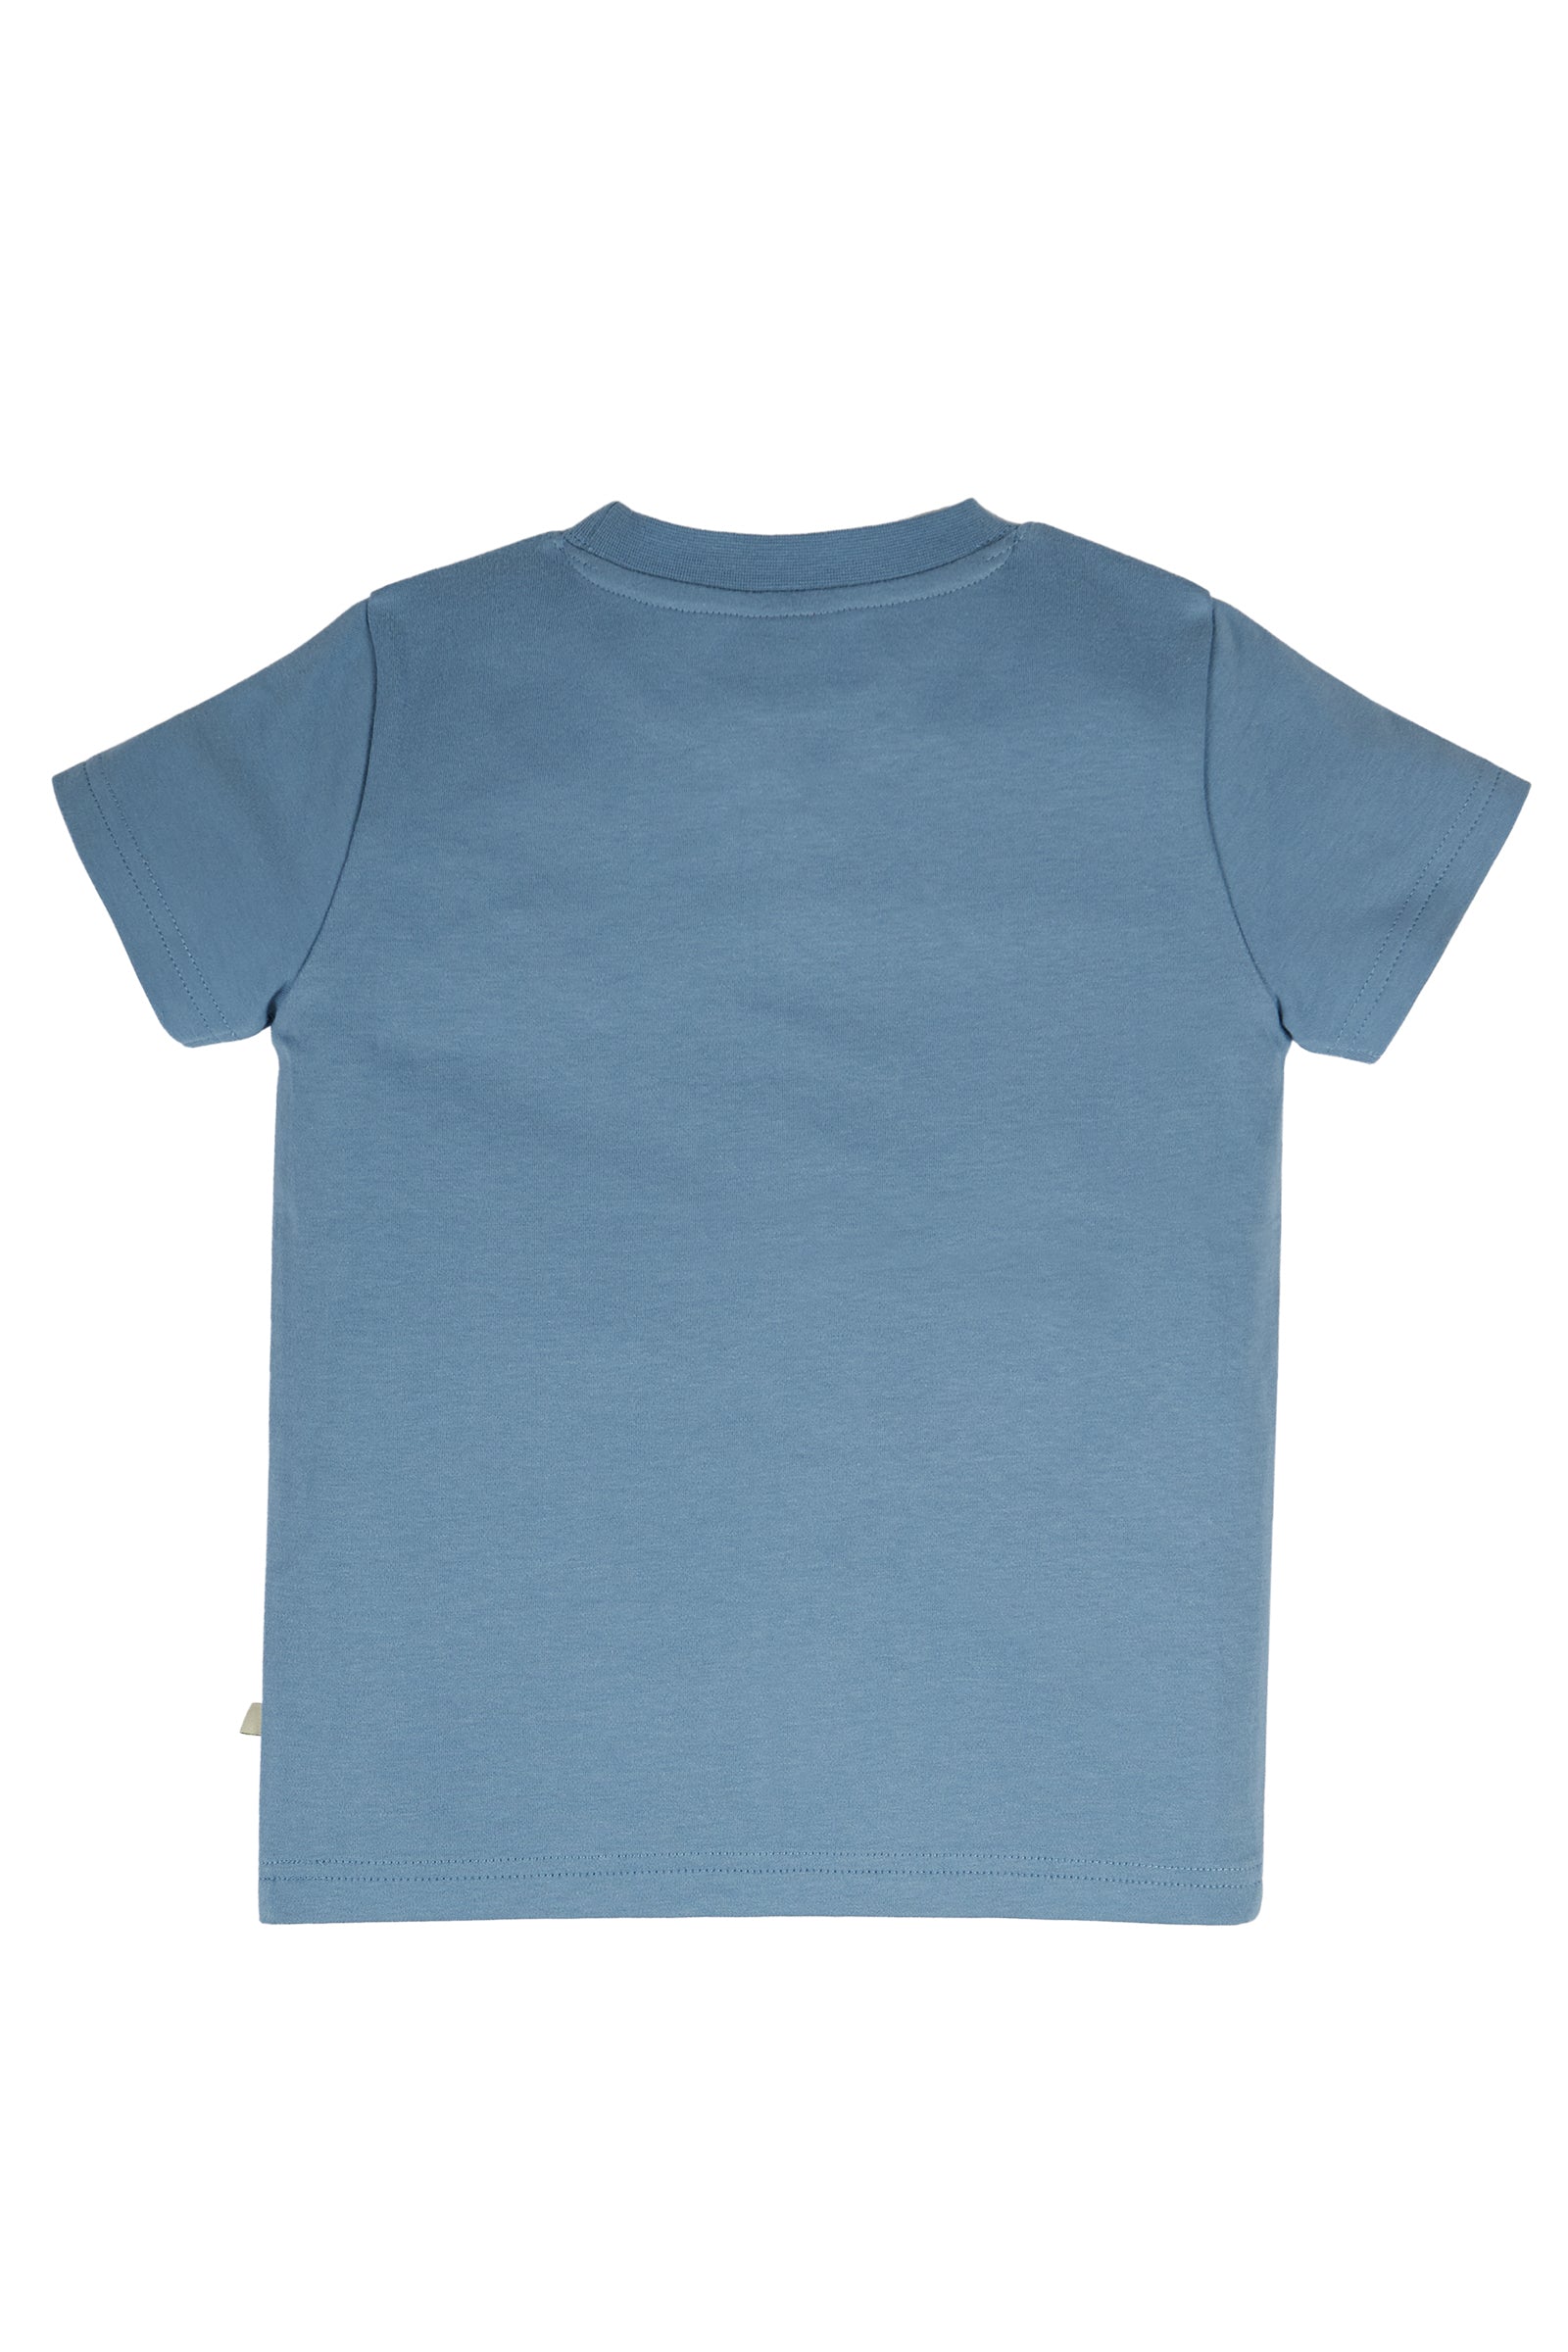 Frugi Carsen Applique T-shirt Short Sleeve - Abisko Sky/Eagle